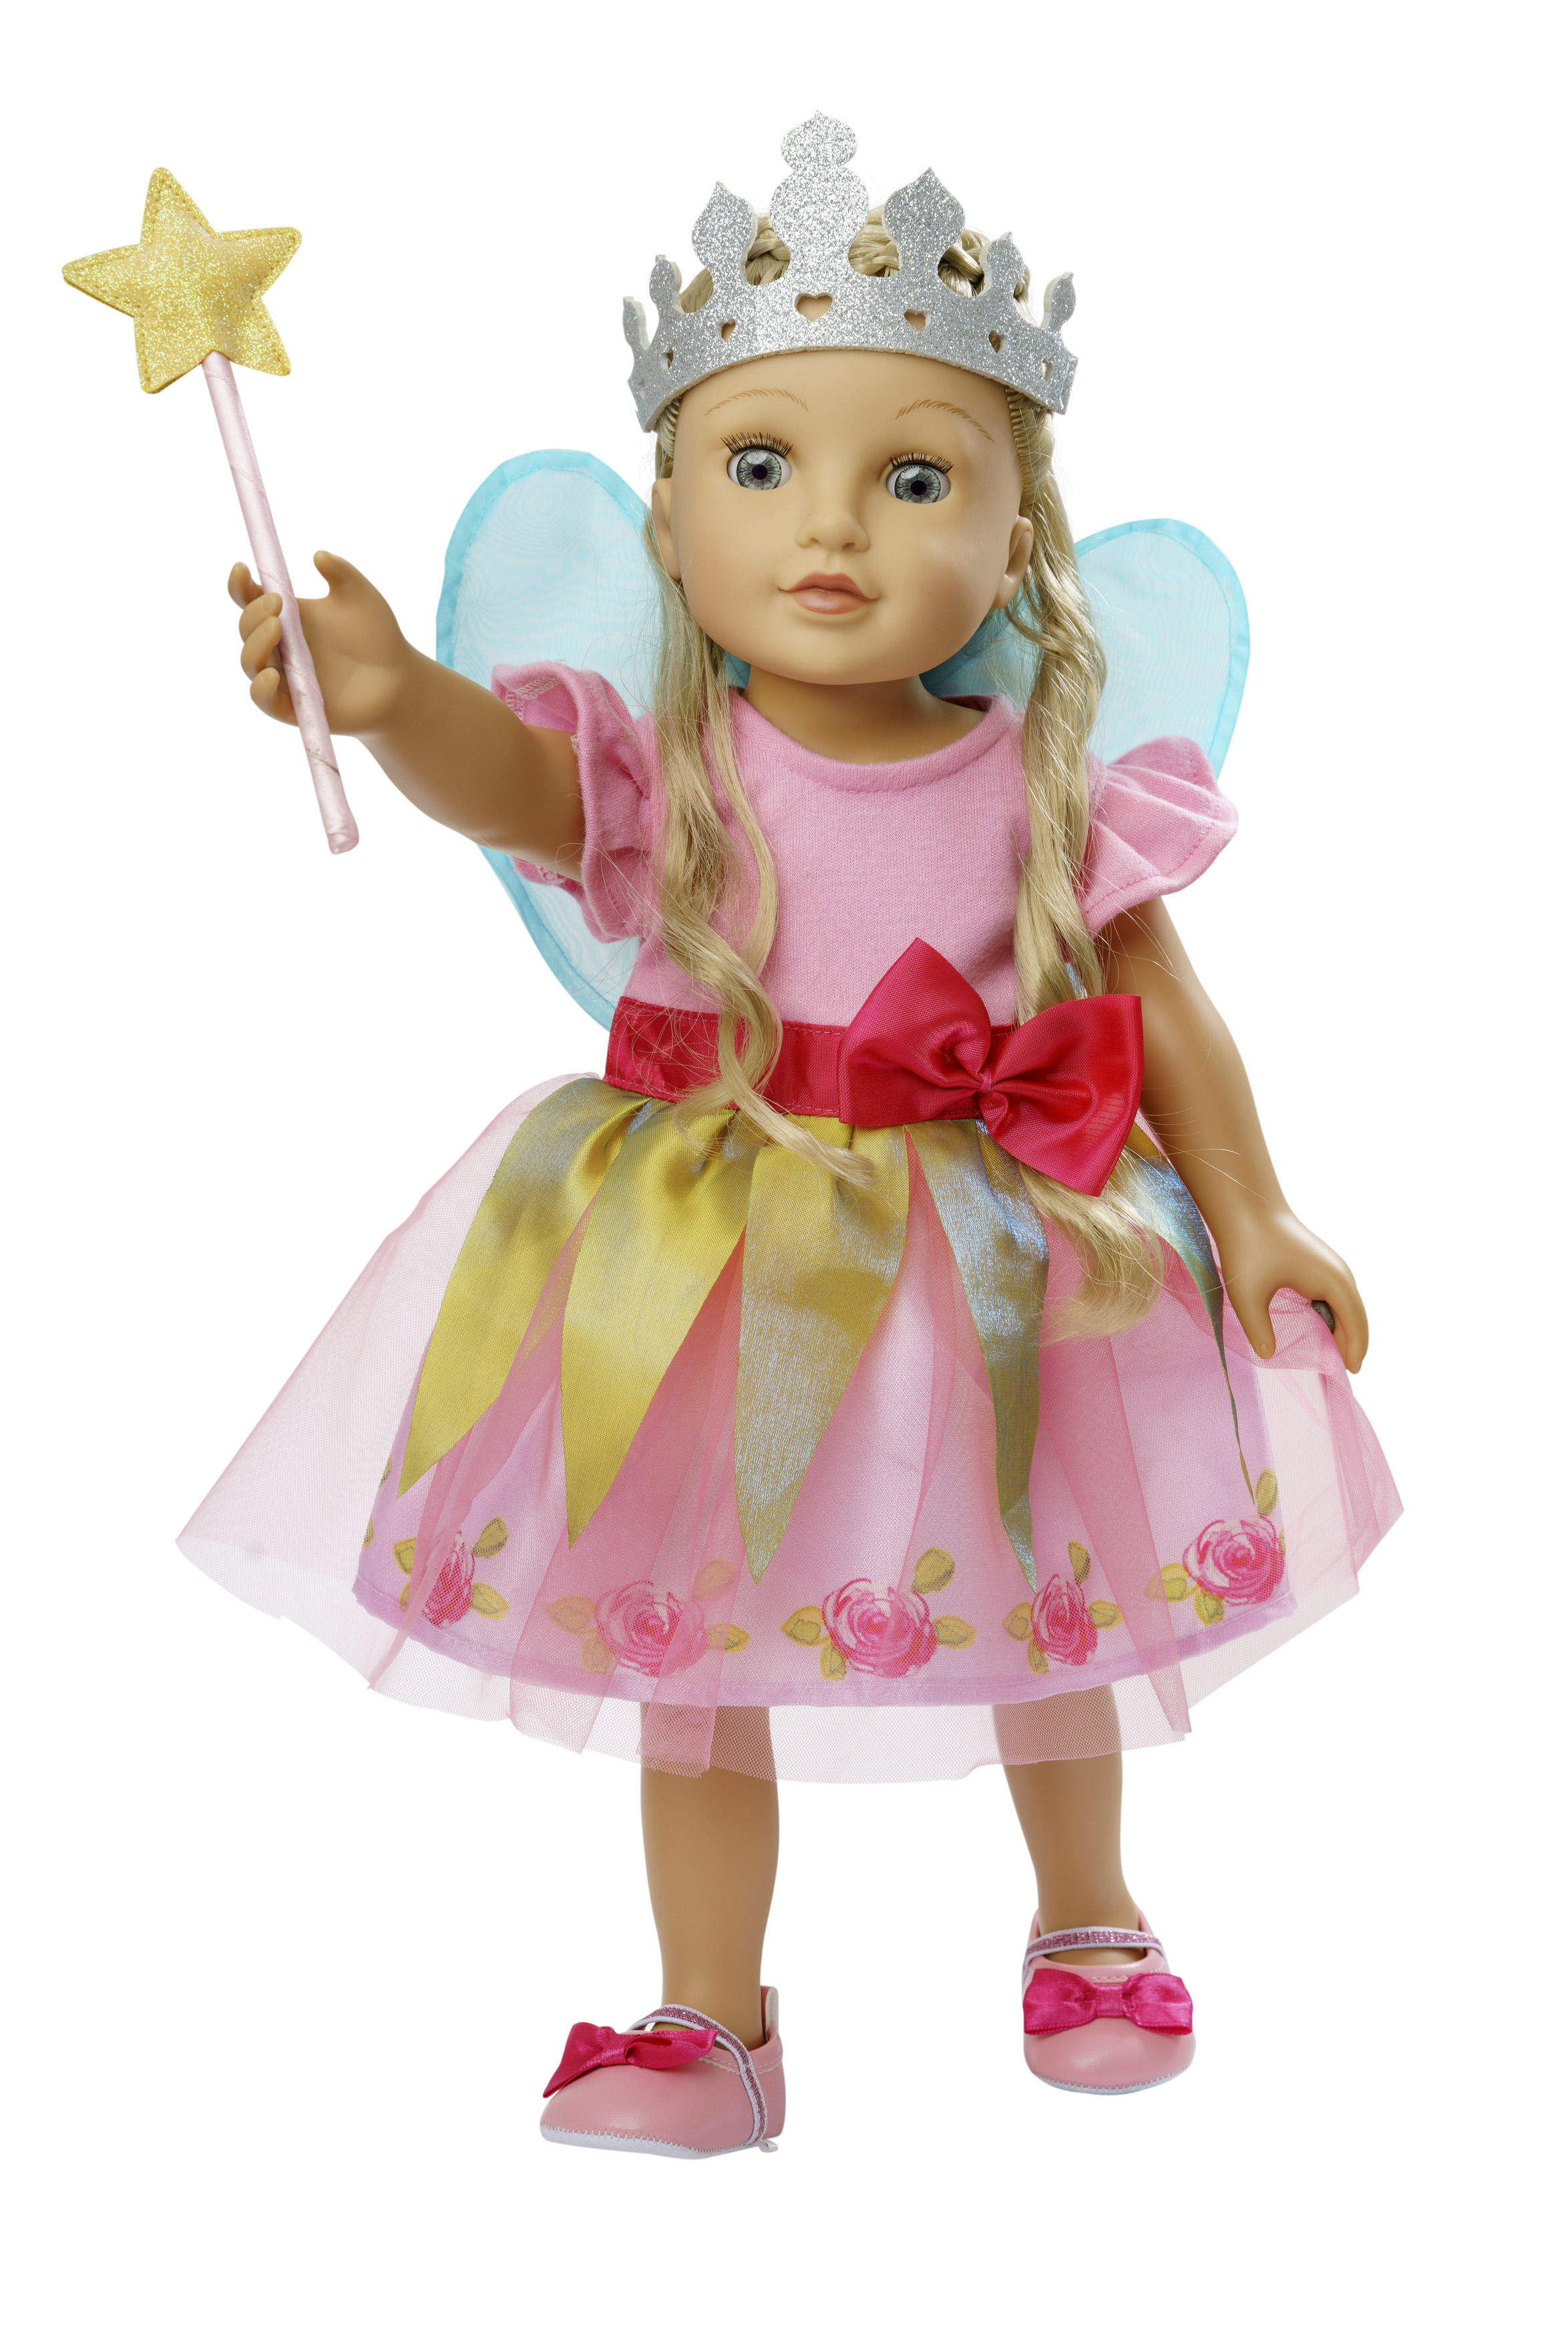 Puppenkleid "Prinzessin Lillifee" mit pinker Schleife, Gr. 28-35 cm